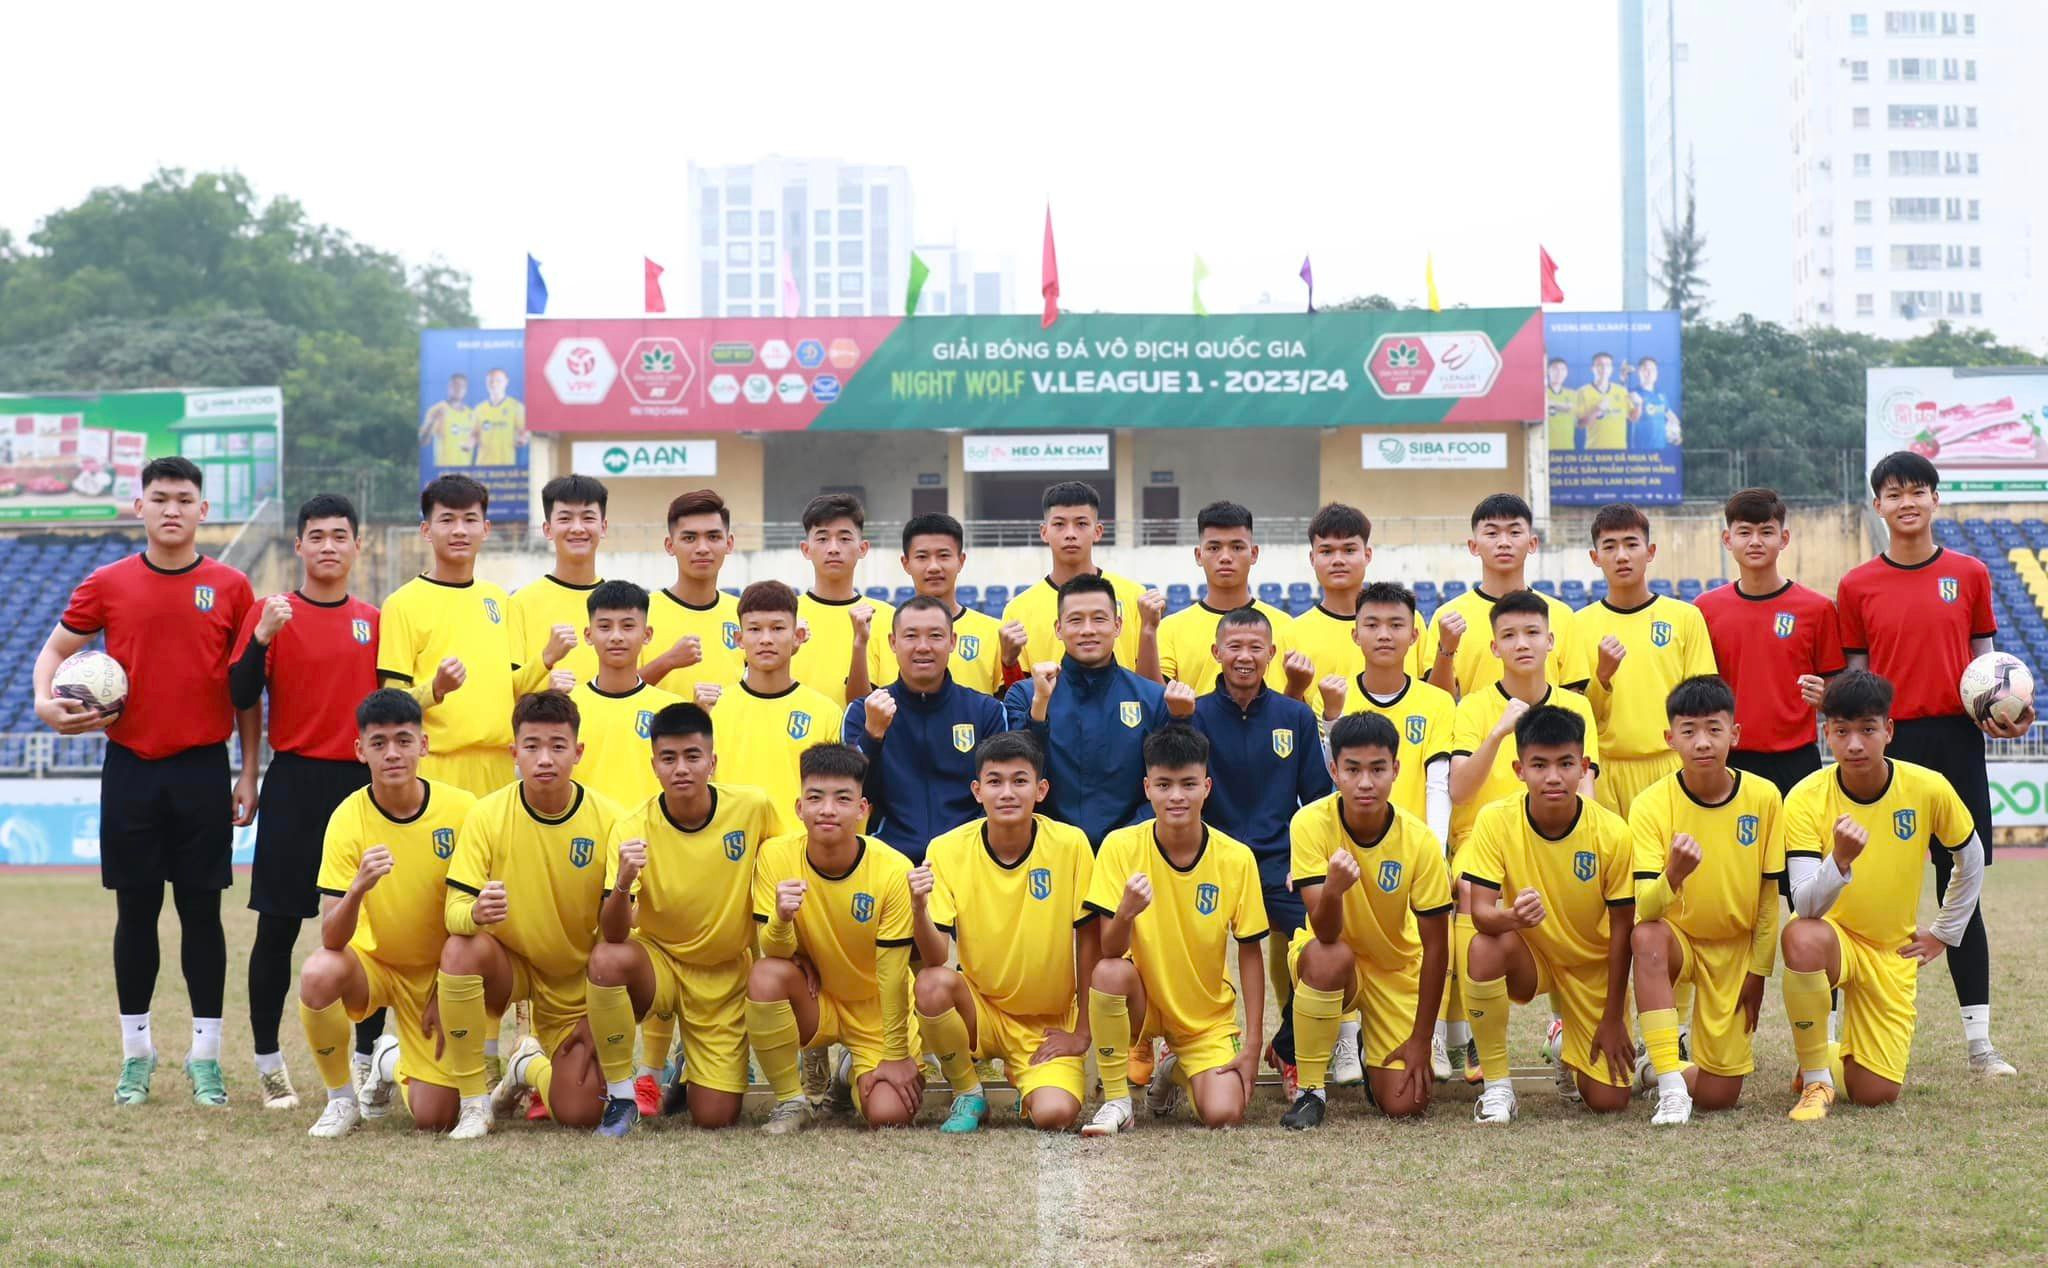 bna_Trong đội hình U17 Sông Lam Nghệ An, Tấn Dũng được giao nhiệm vụ đội trưởng đội bóng..jpg